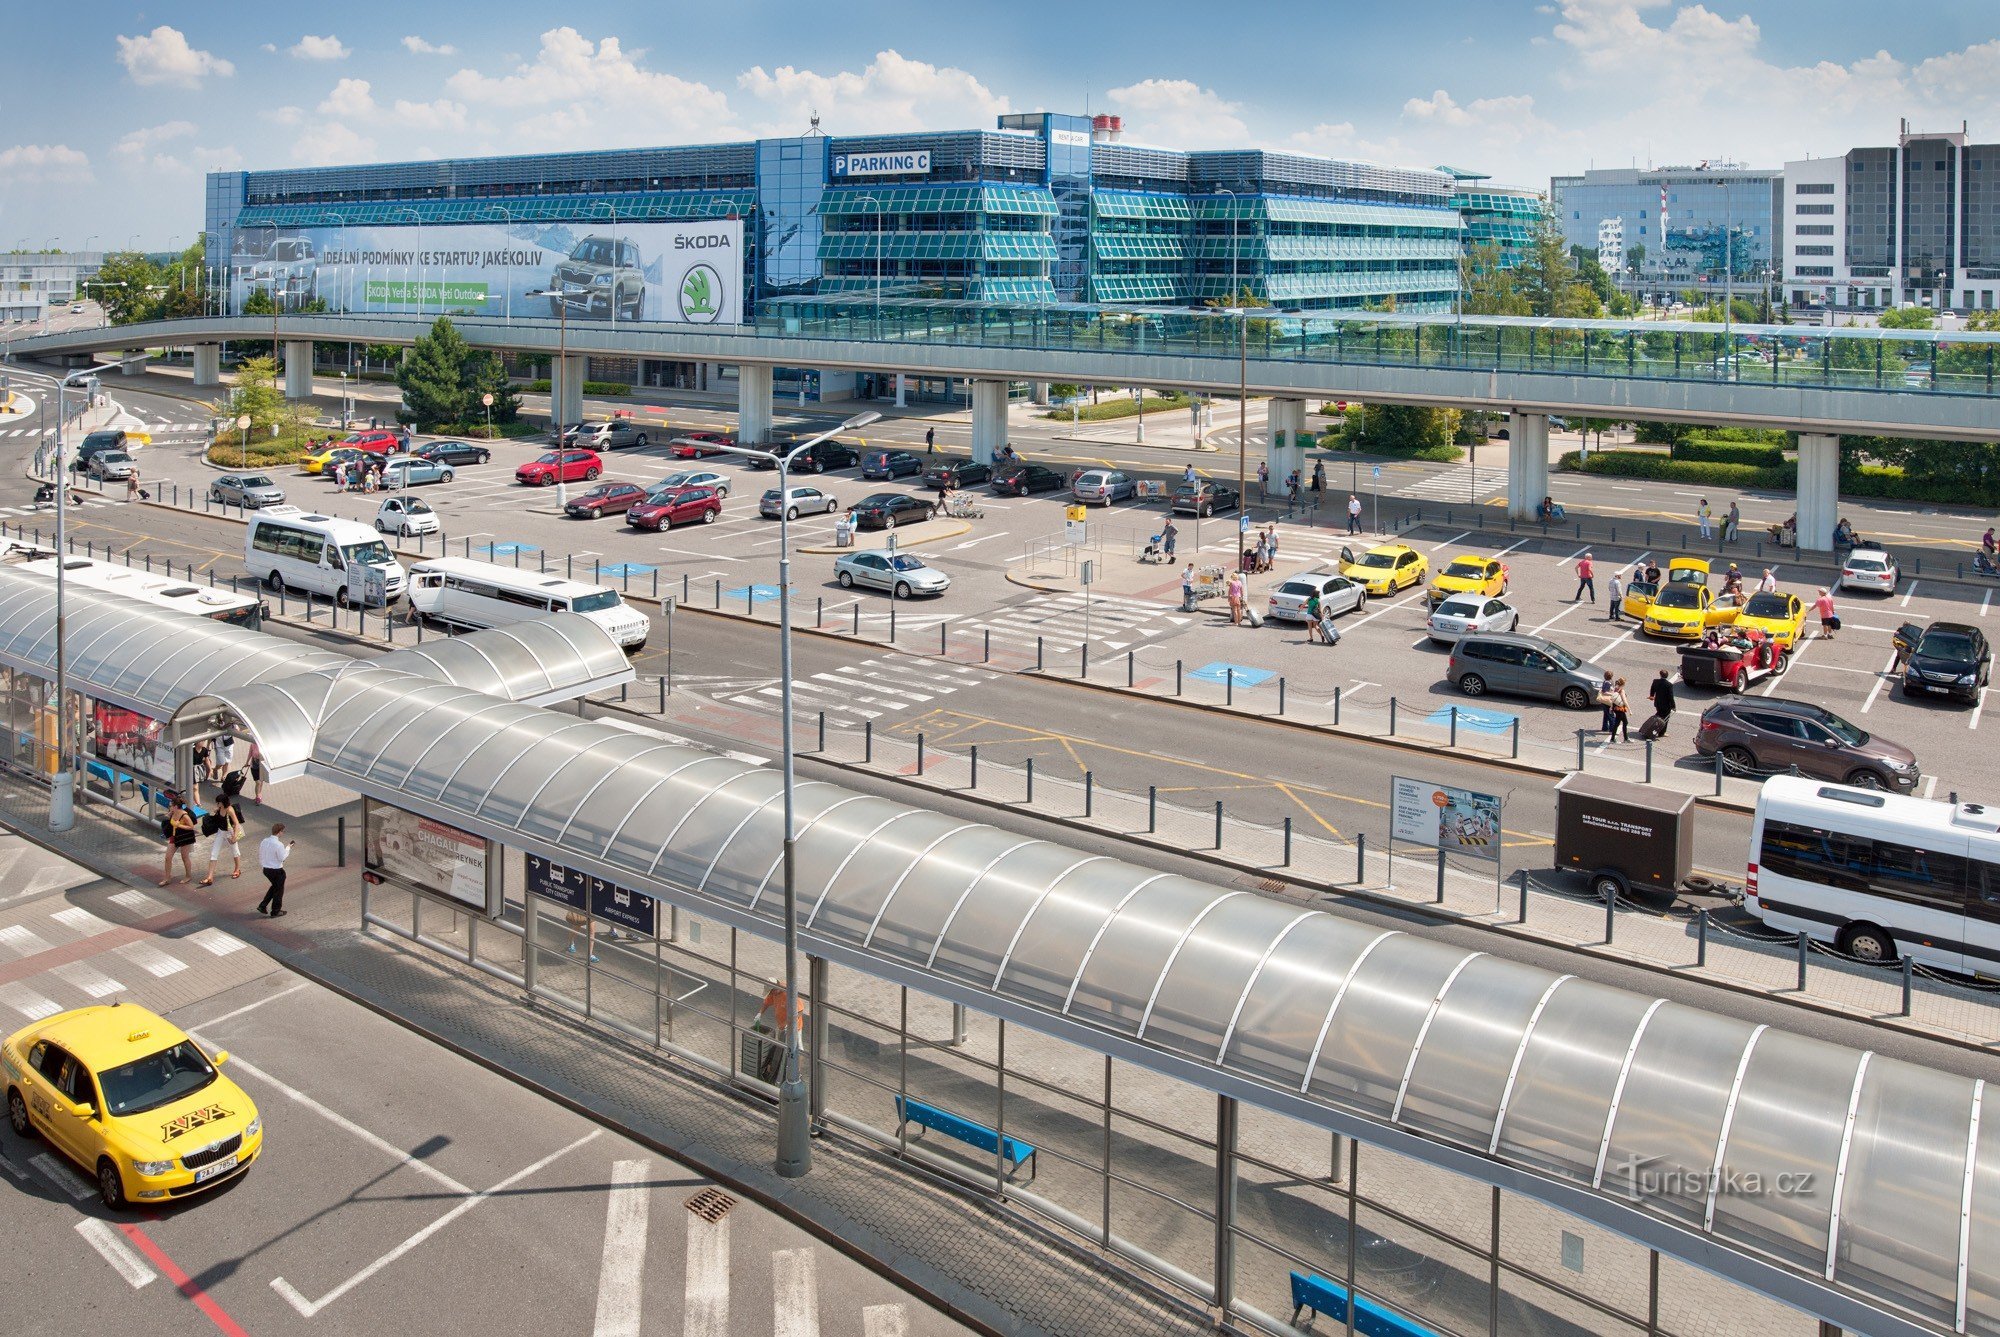 Prague Airport verandert om passagiers tegemoet te komen, het heeft de prijzen van verfrissingen en parkeertarieven verlaagd